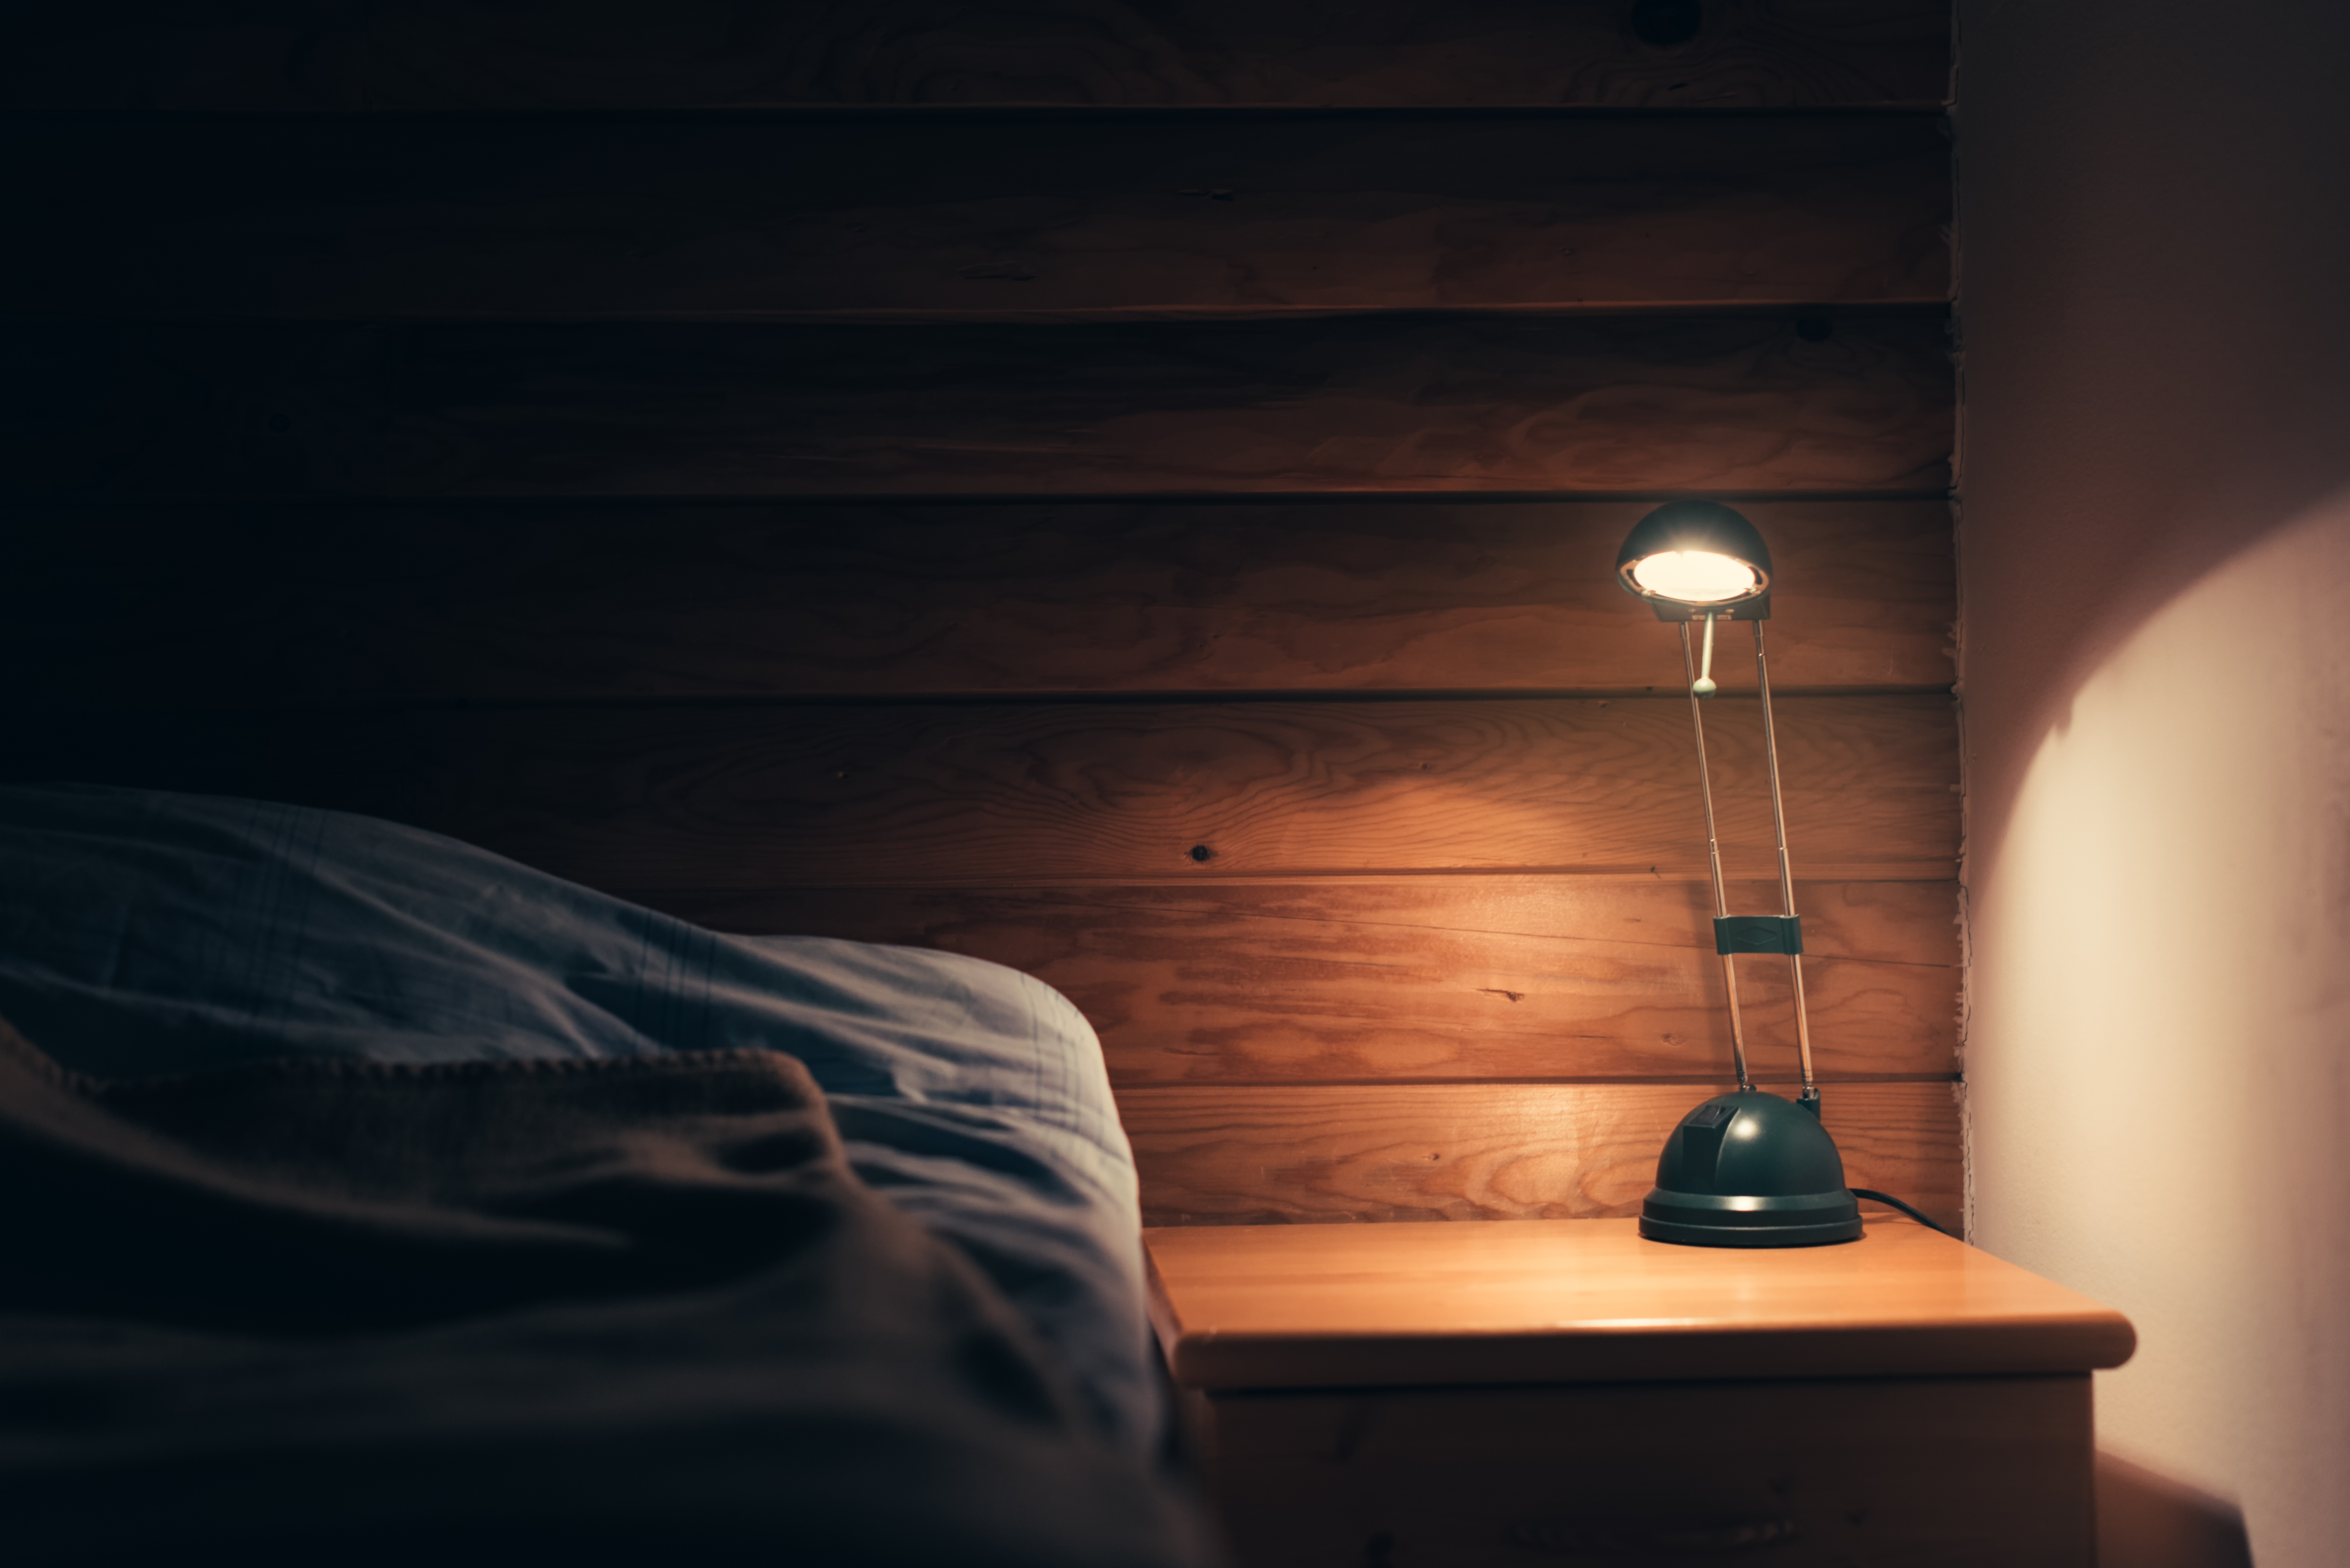 Bedroom lamp | Source: Shutterstock